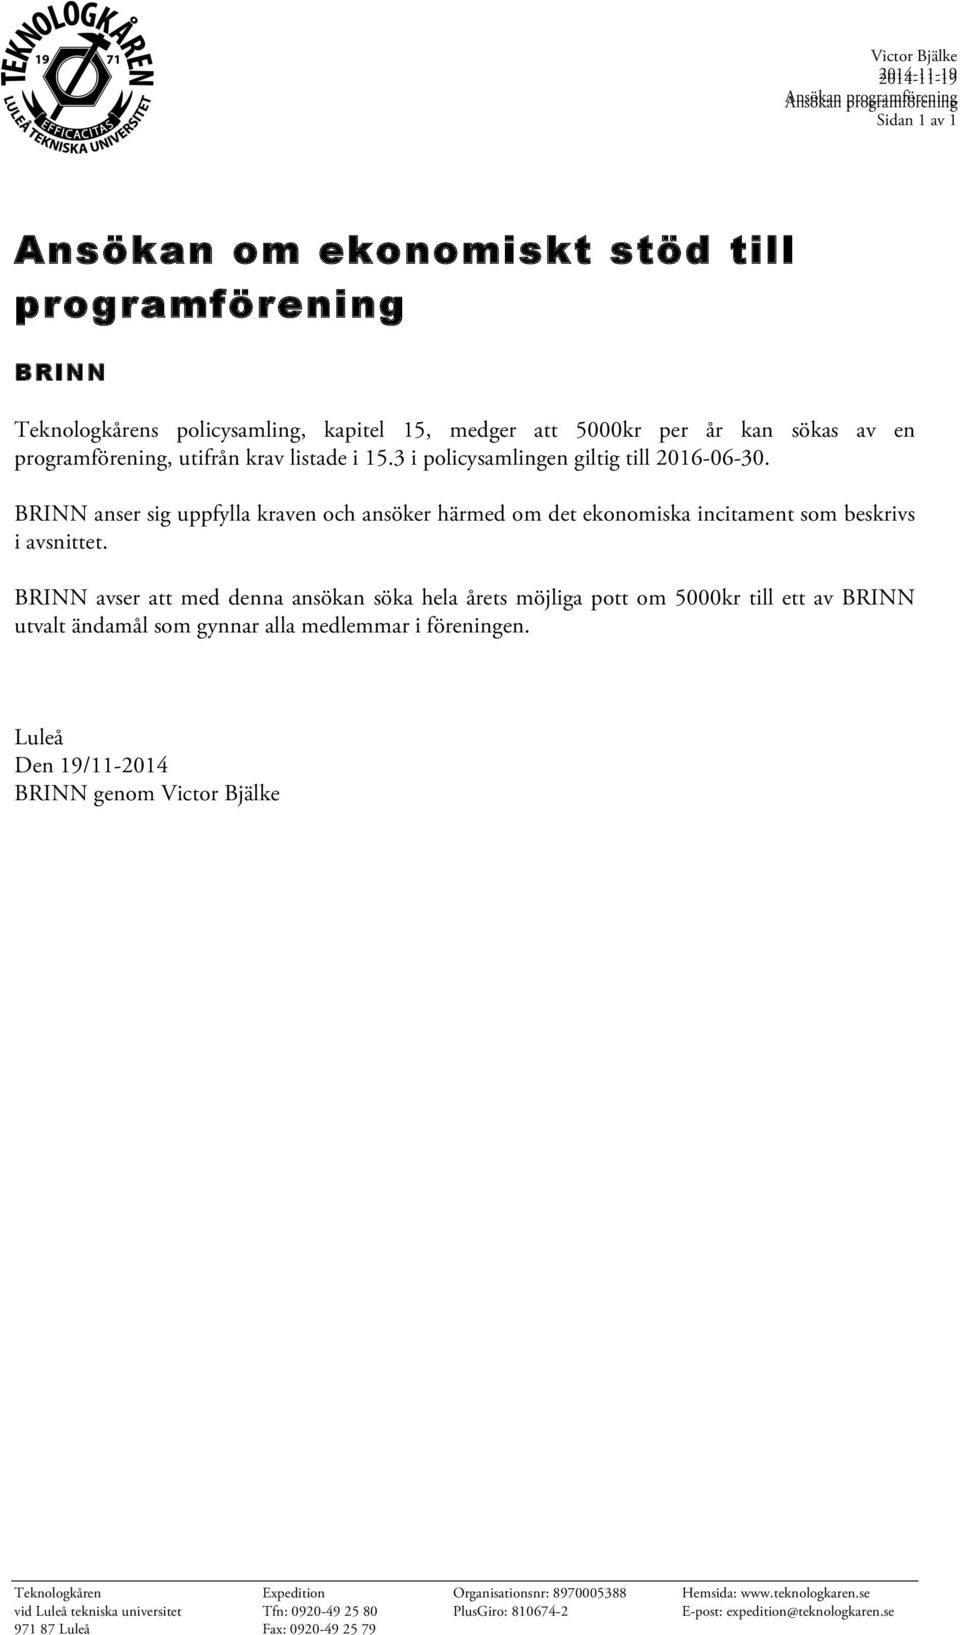 BRINN avser att med denna ansökan söka hela årets möjliga pott om 5000kr till ett av BRINN utvalt ändamål som gynnar alla medlemmar i föreningen.